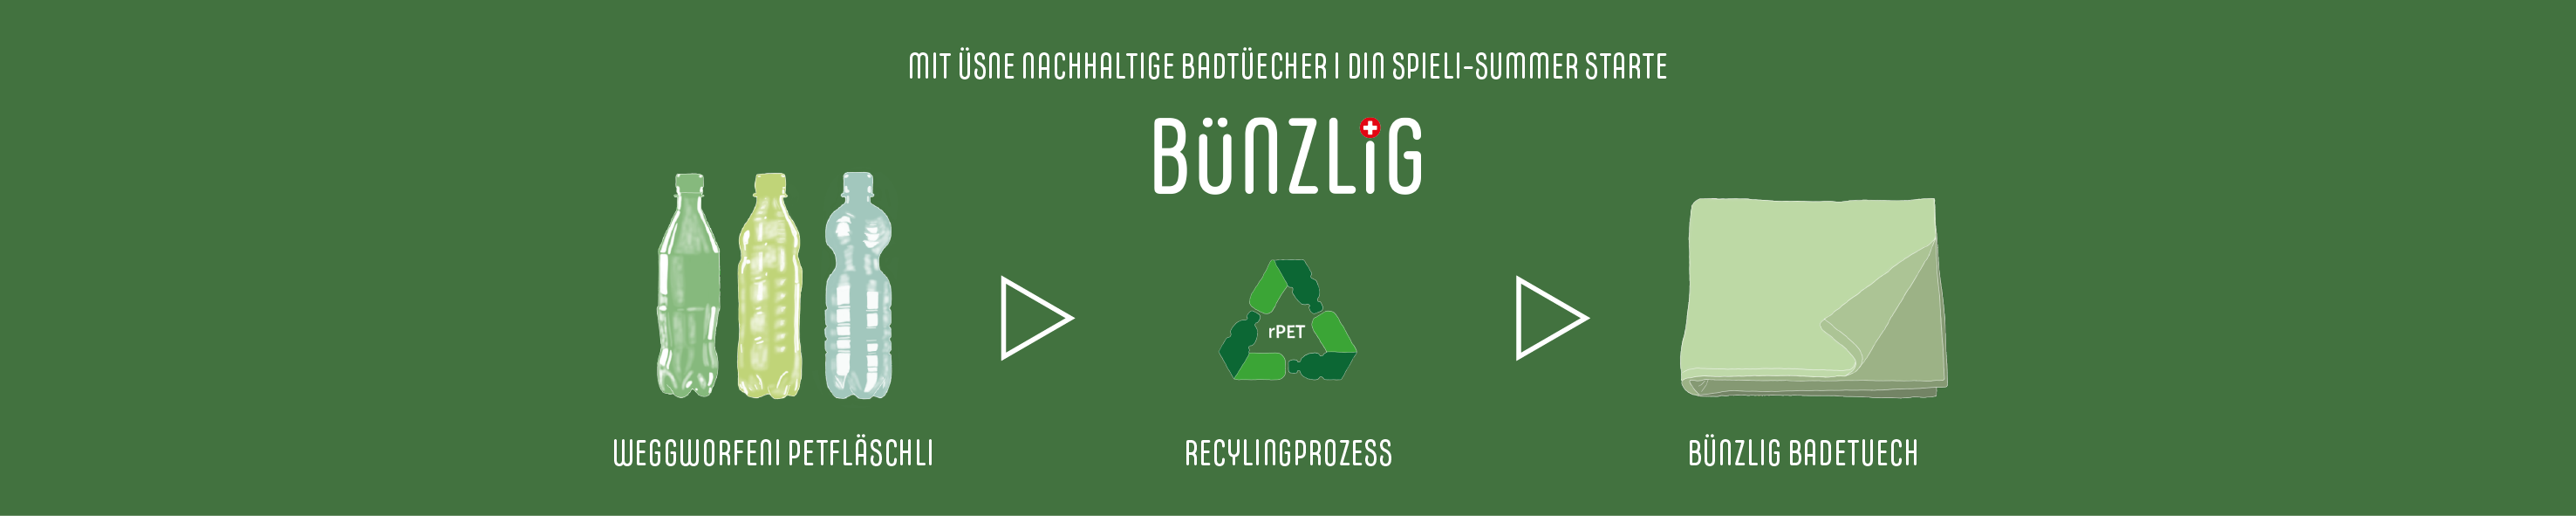 Website Banner vom Bünzlig Online Shop - zeigt auf wie die Spieltüchern aus recycelten PET Flaschen hergestellt werden